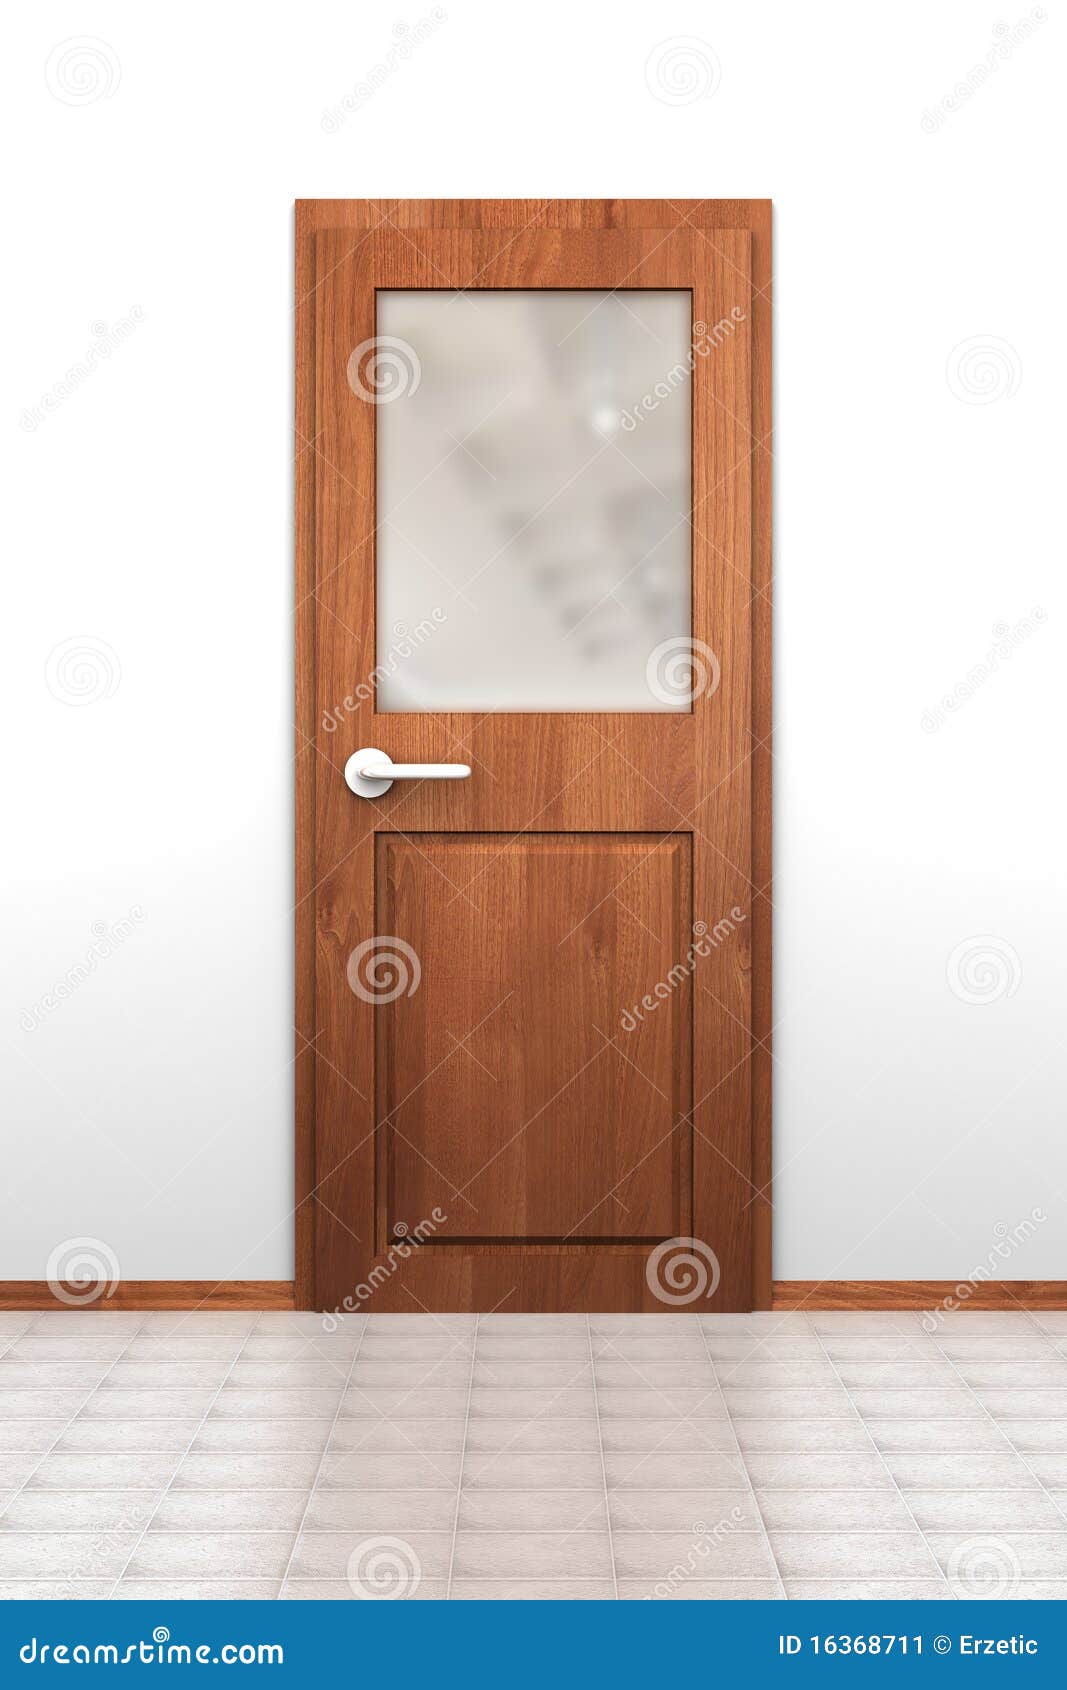 door with opaque window